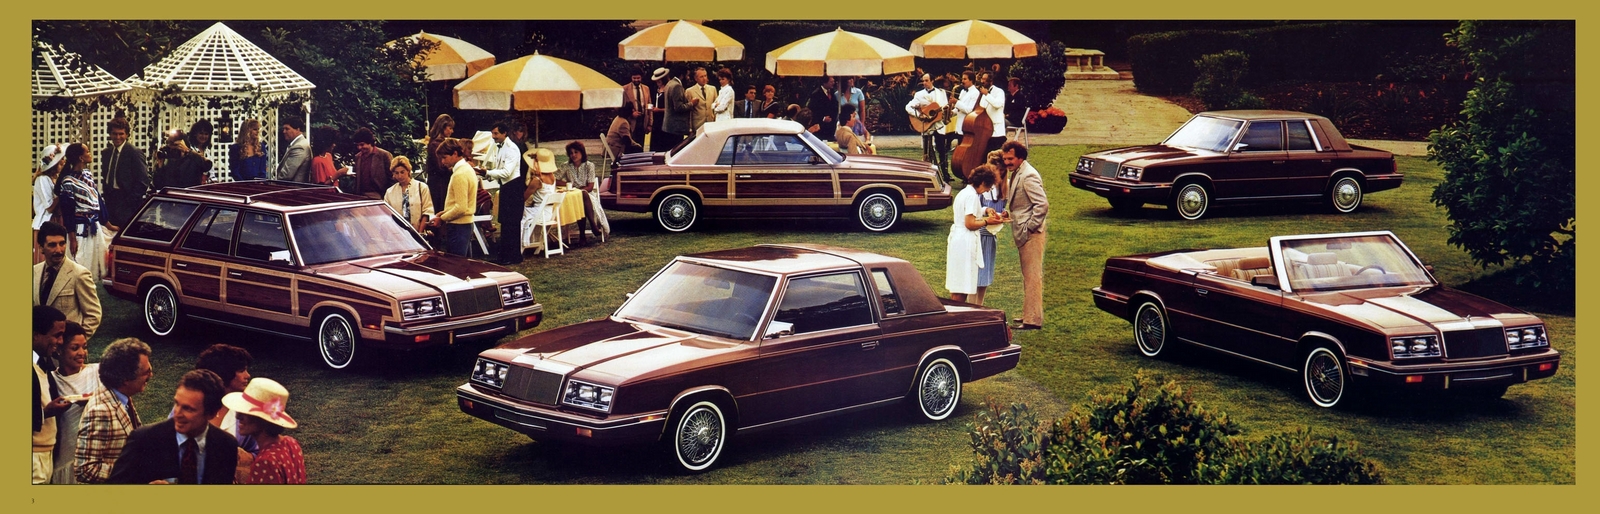 n_1984 Chrysler LeBaron-03-04-05.jpg